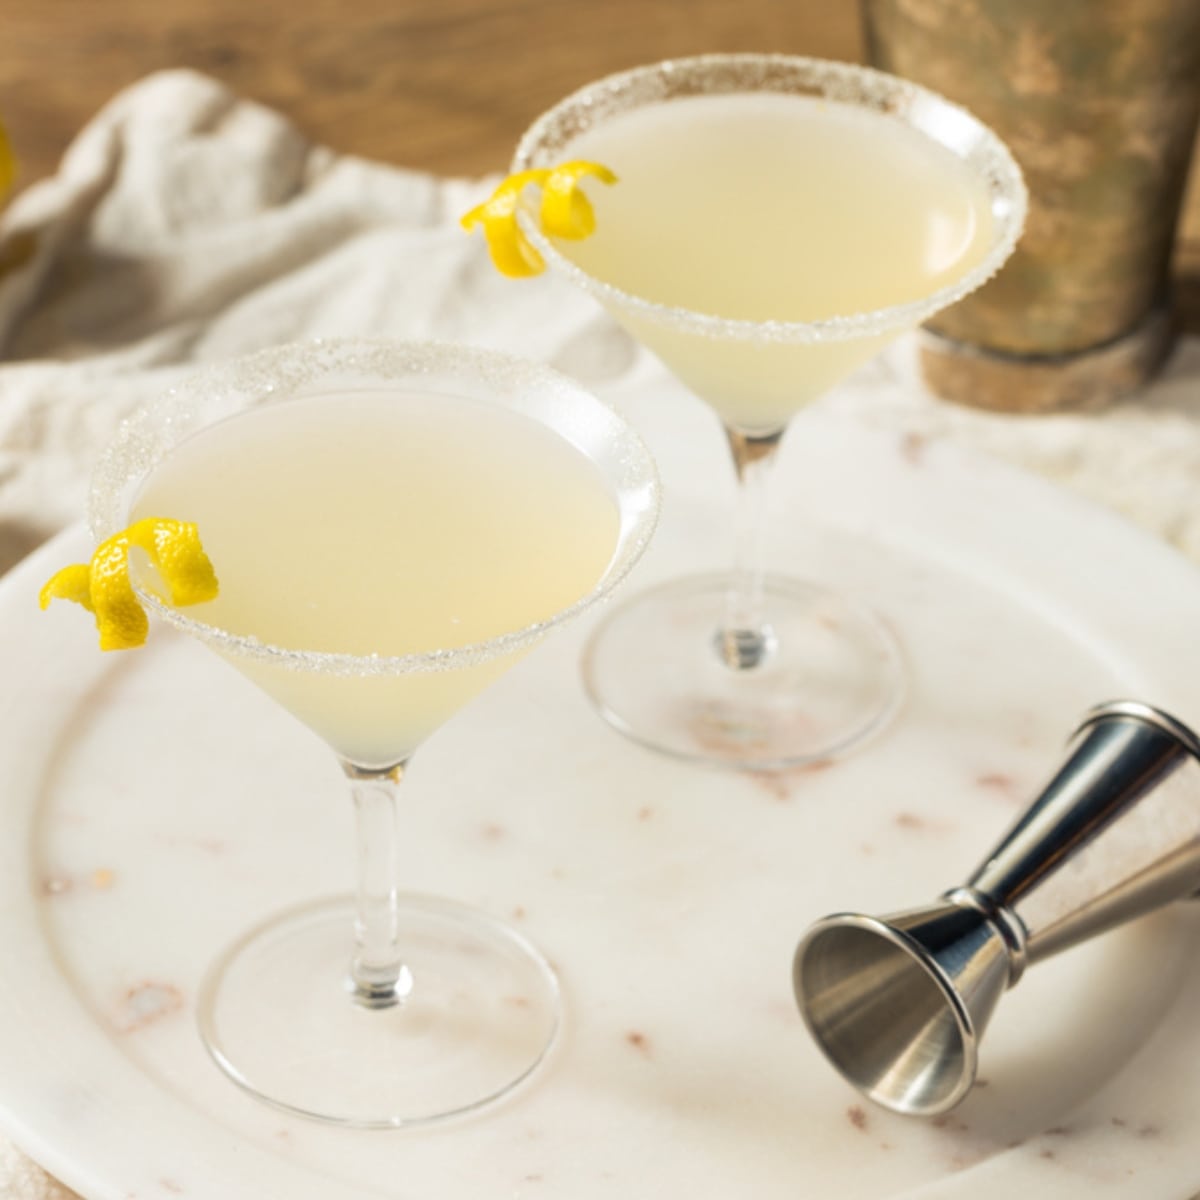 Two Salted Rim Glasses of Lemon Martini Drop